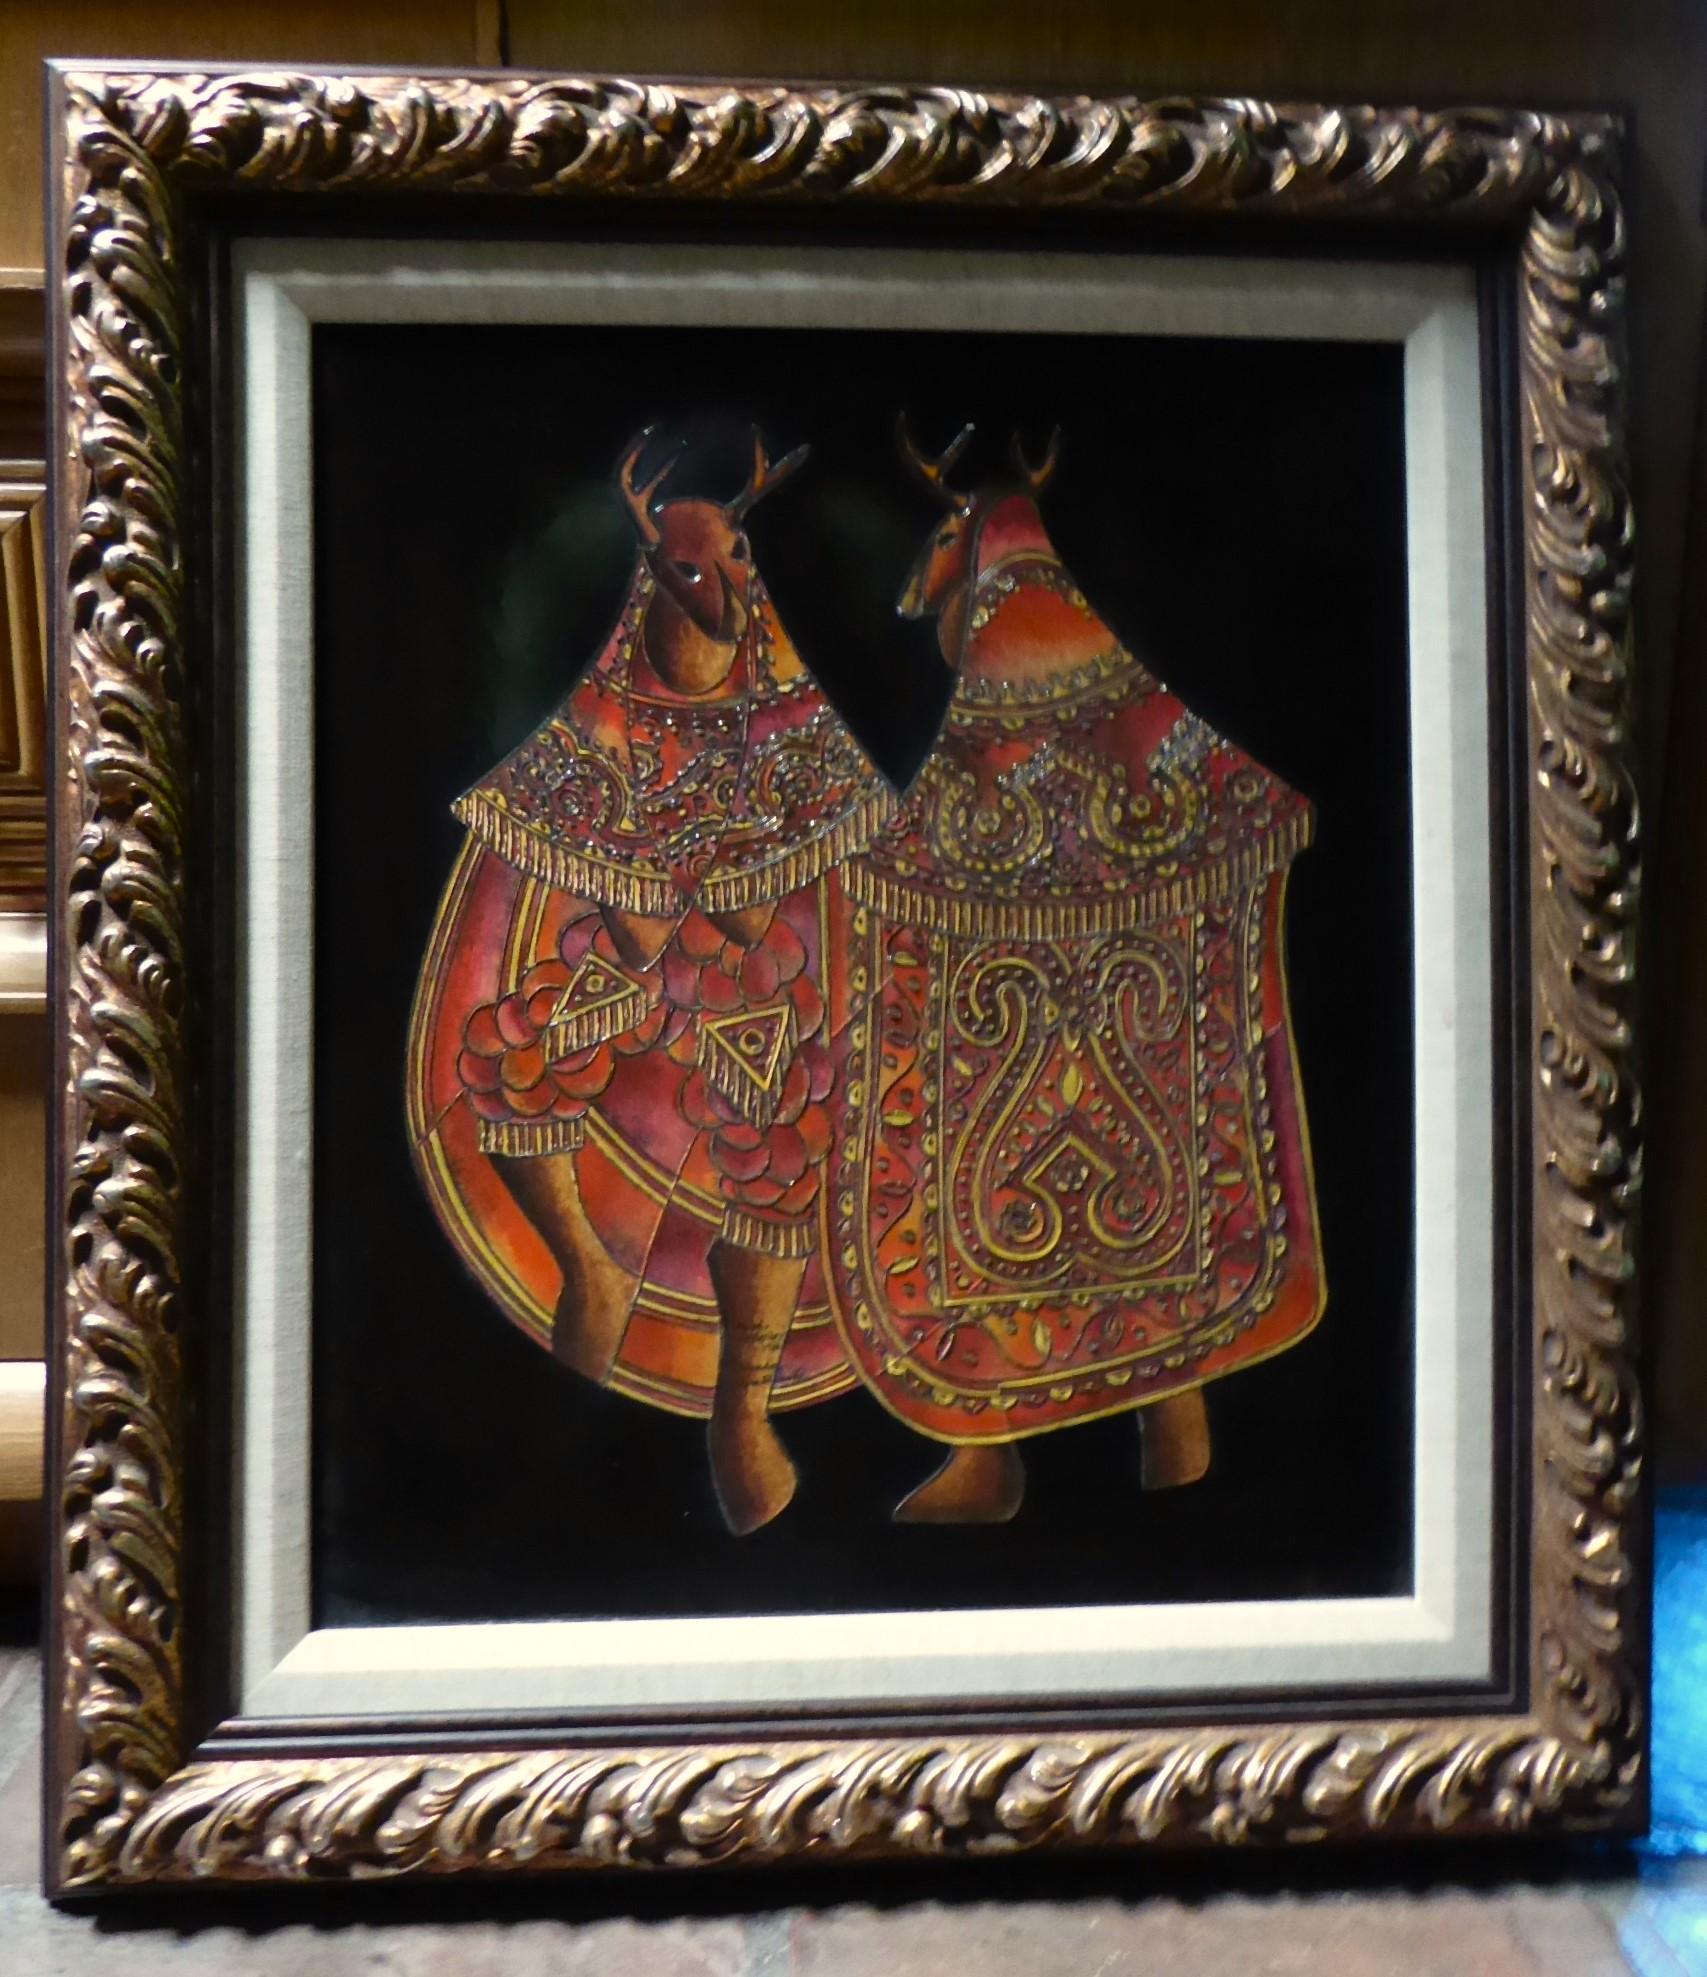 David Ordoñez El Baile Del Venado Folkloric Maya Theme Framed Artwork Guatemala In Good Condition For Sale In Miami, FL